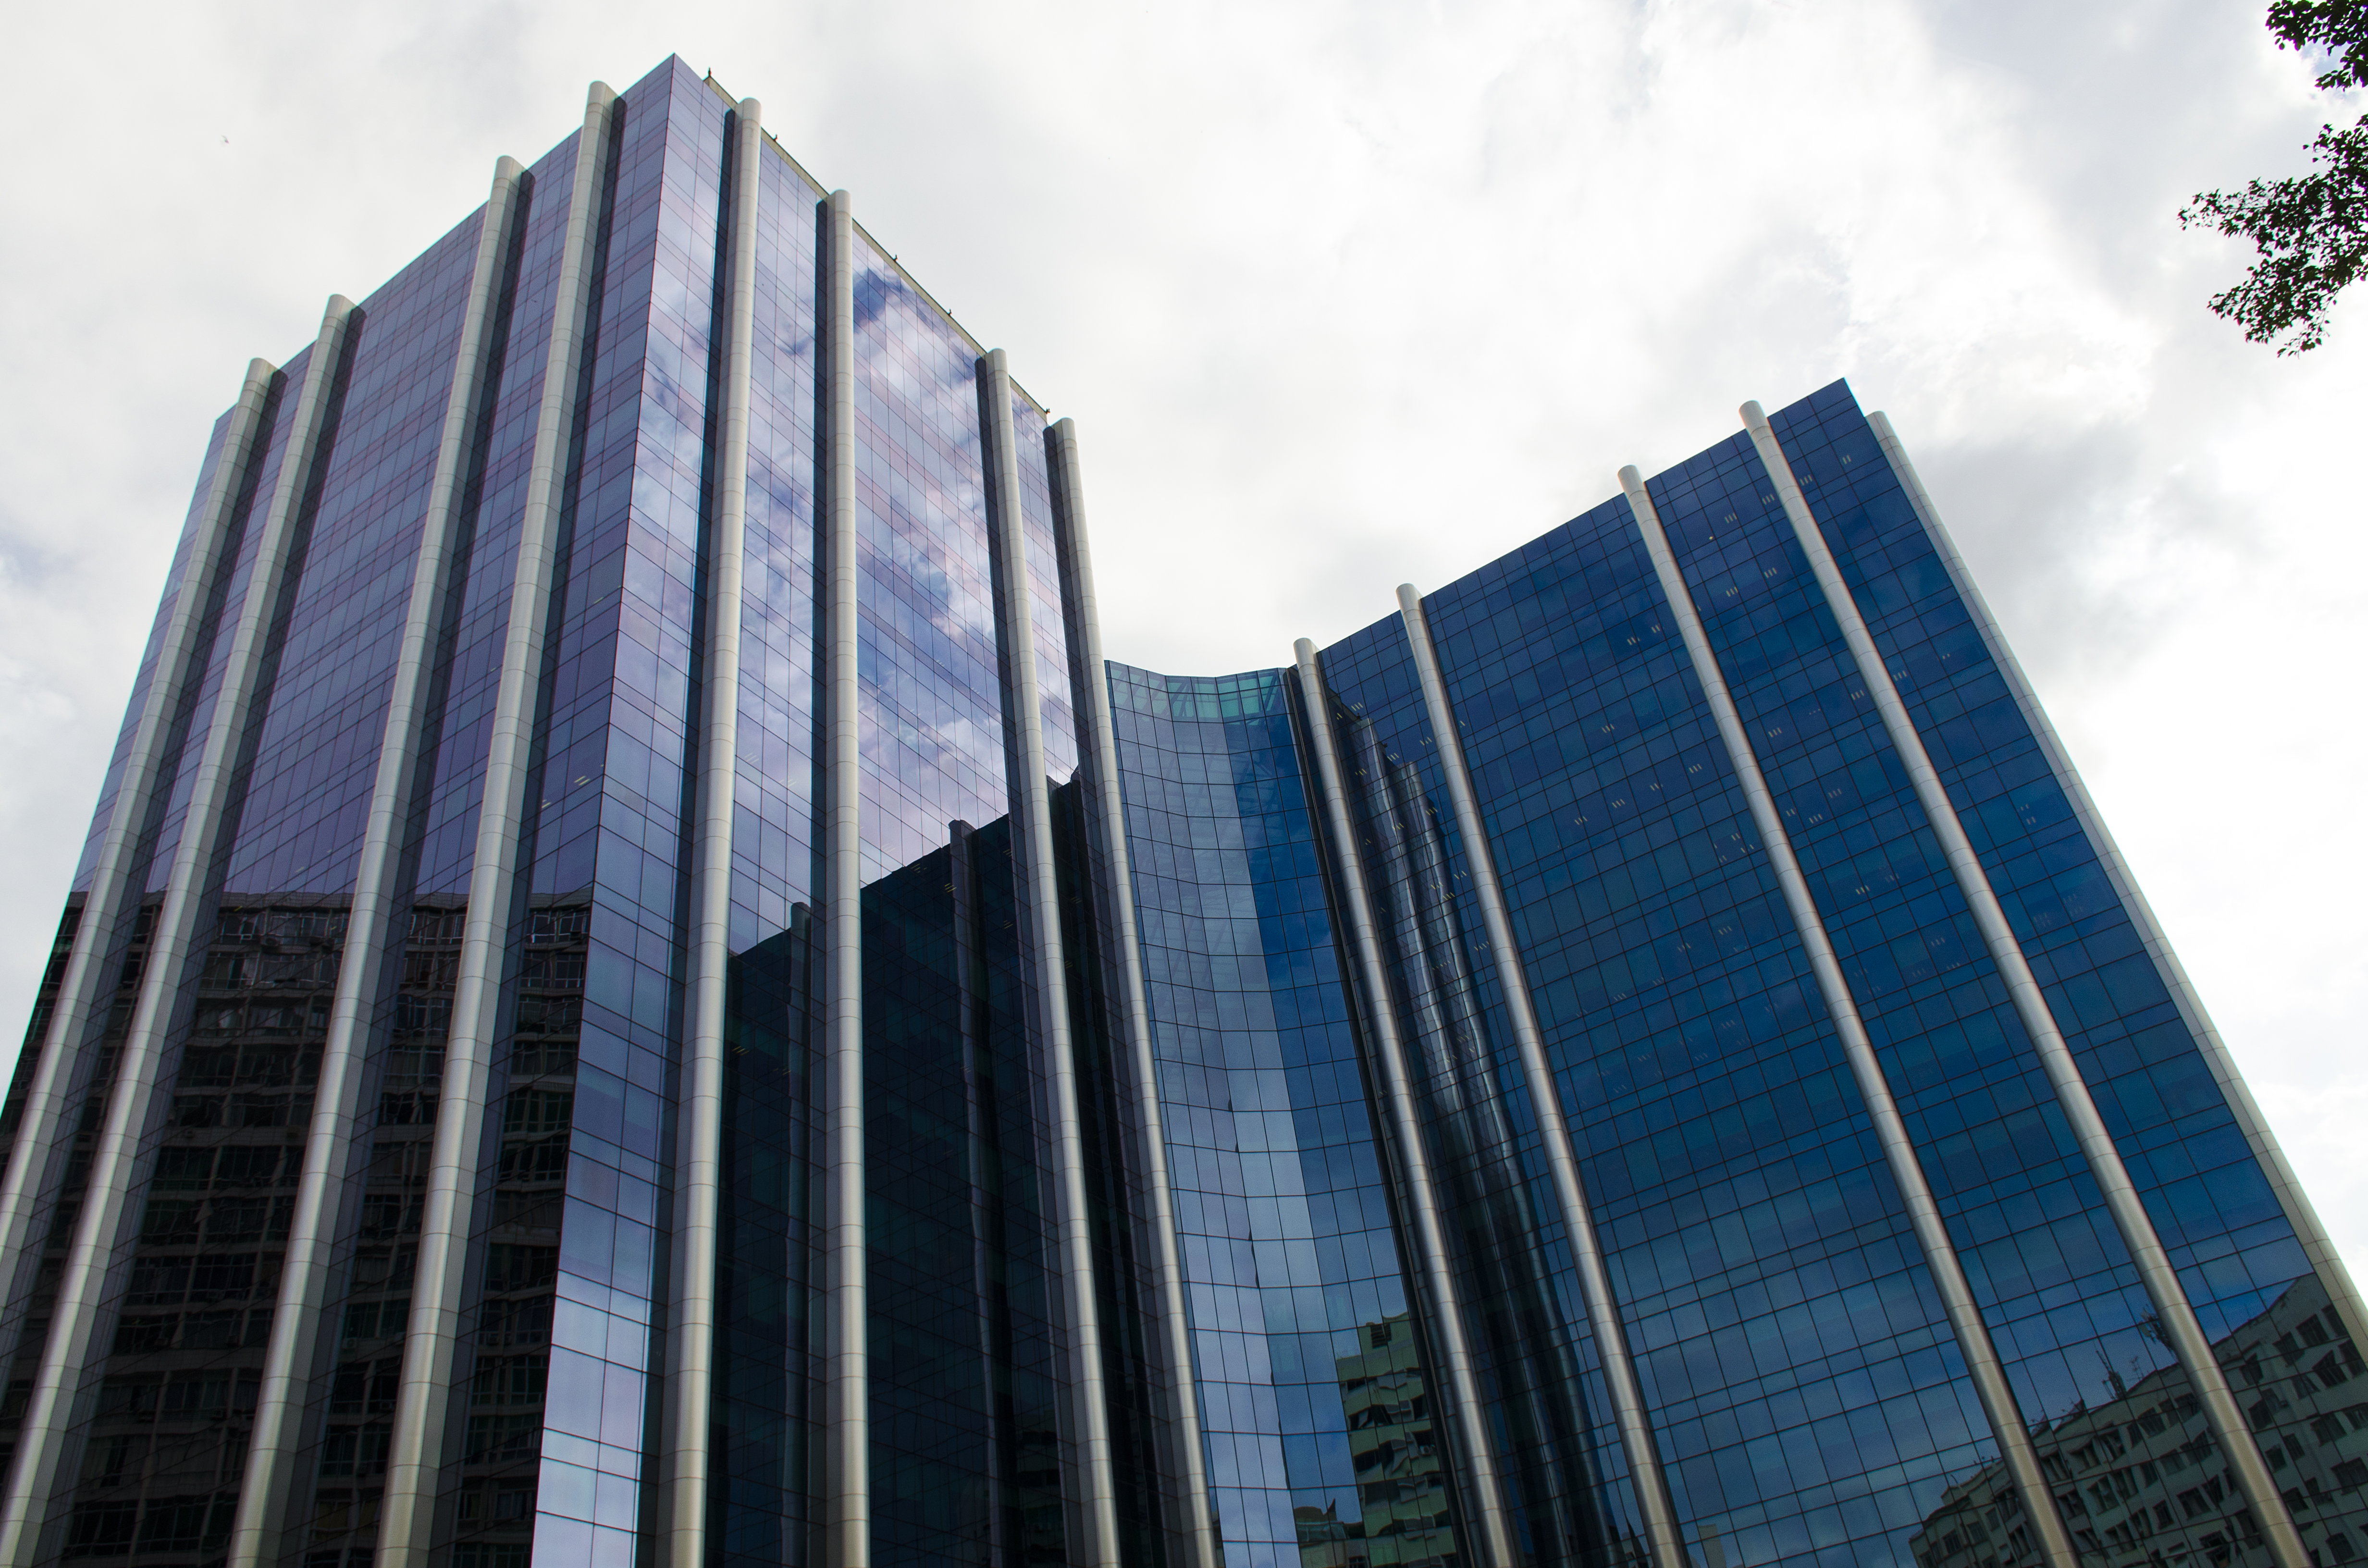 Edifício sede da Petrobras espelhado com cor azul